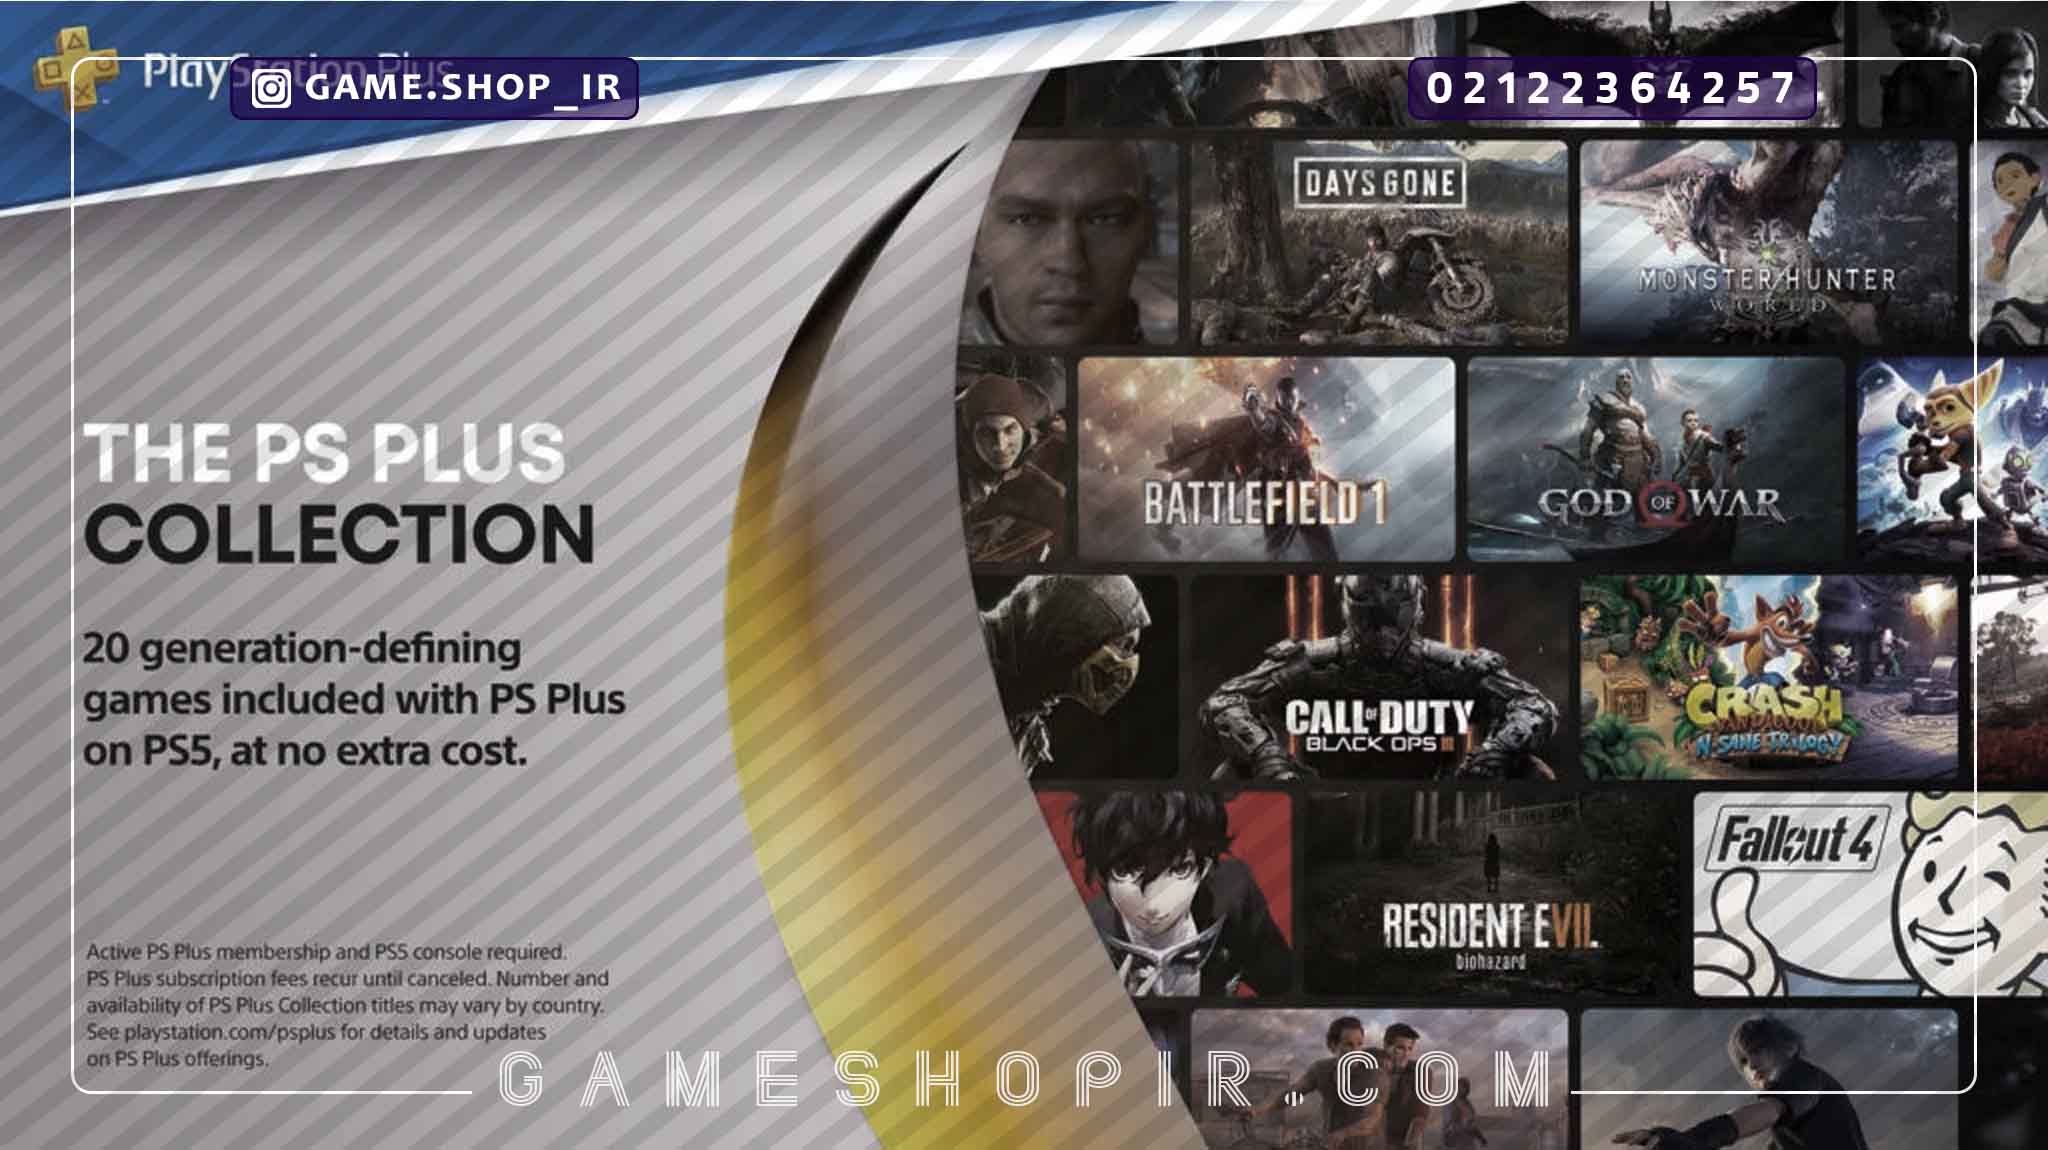 بازی رایگان کنسول PS5 ؛ 15بازی رایگان که الان میتوانید بازی کنید | گیم شاپ